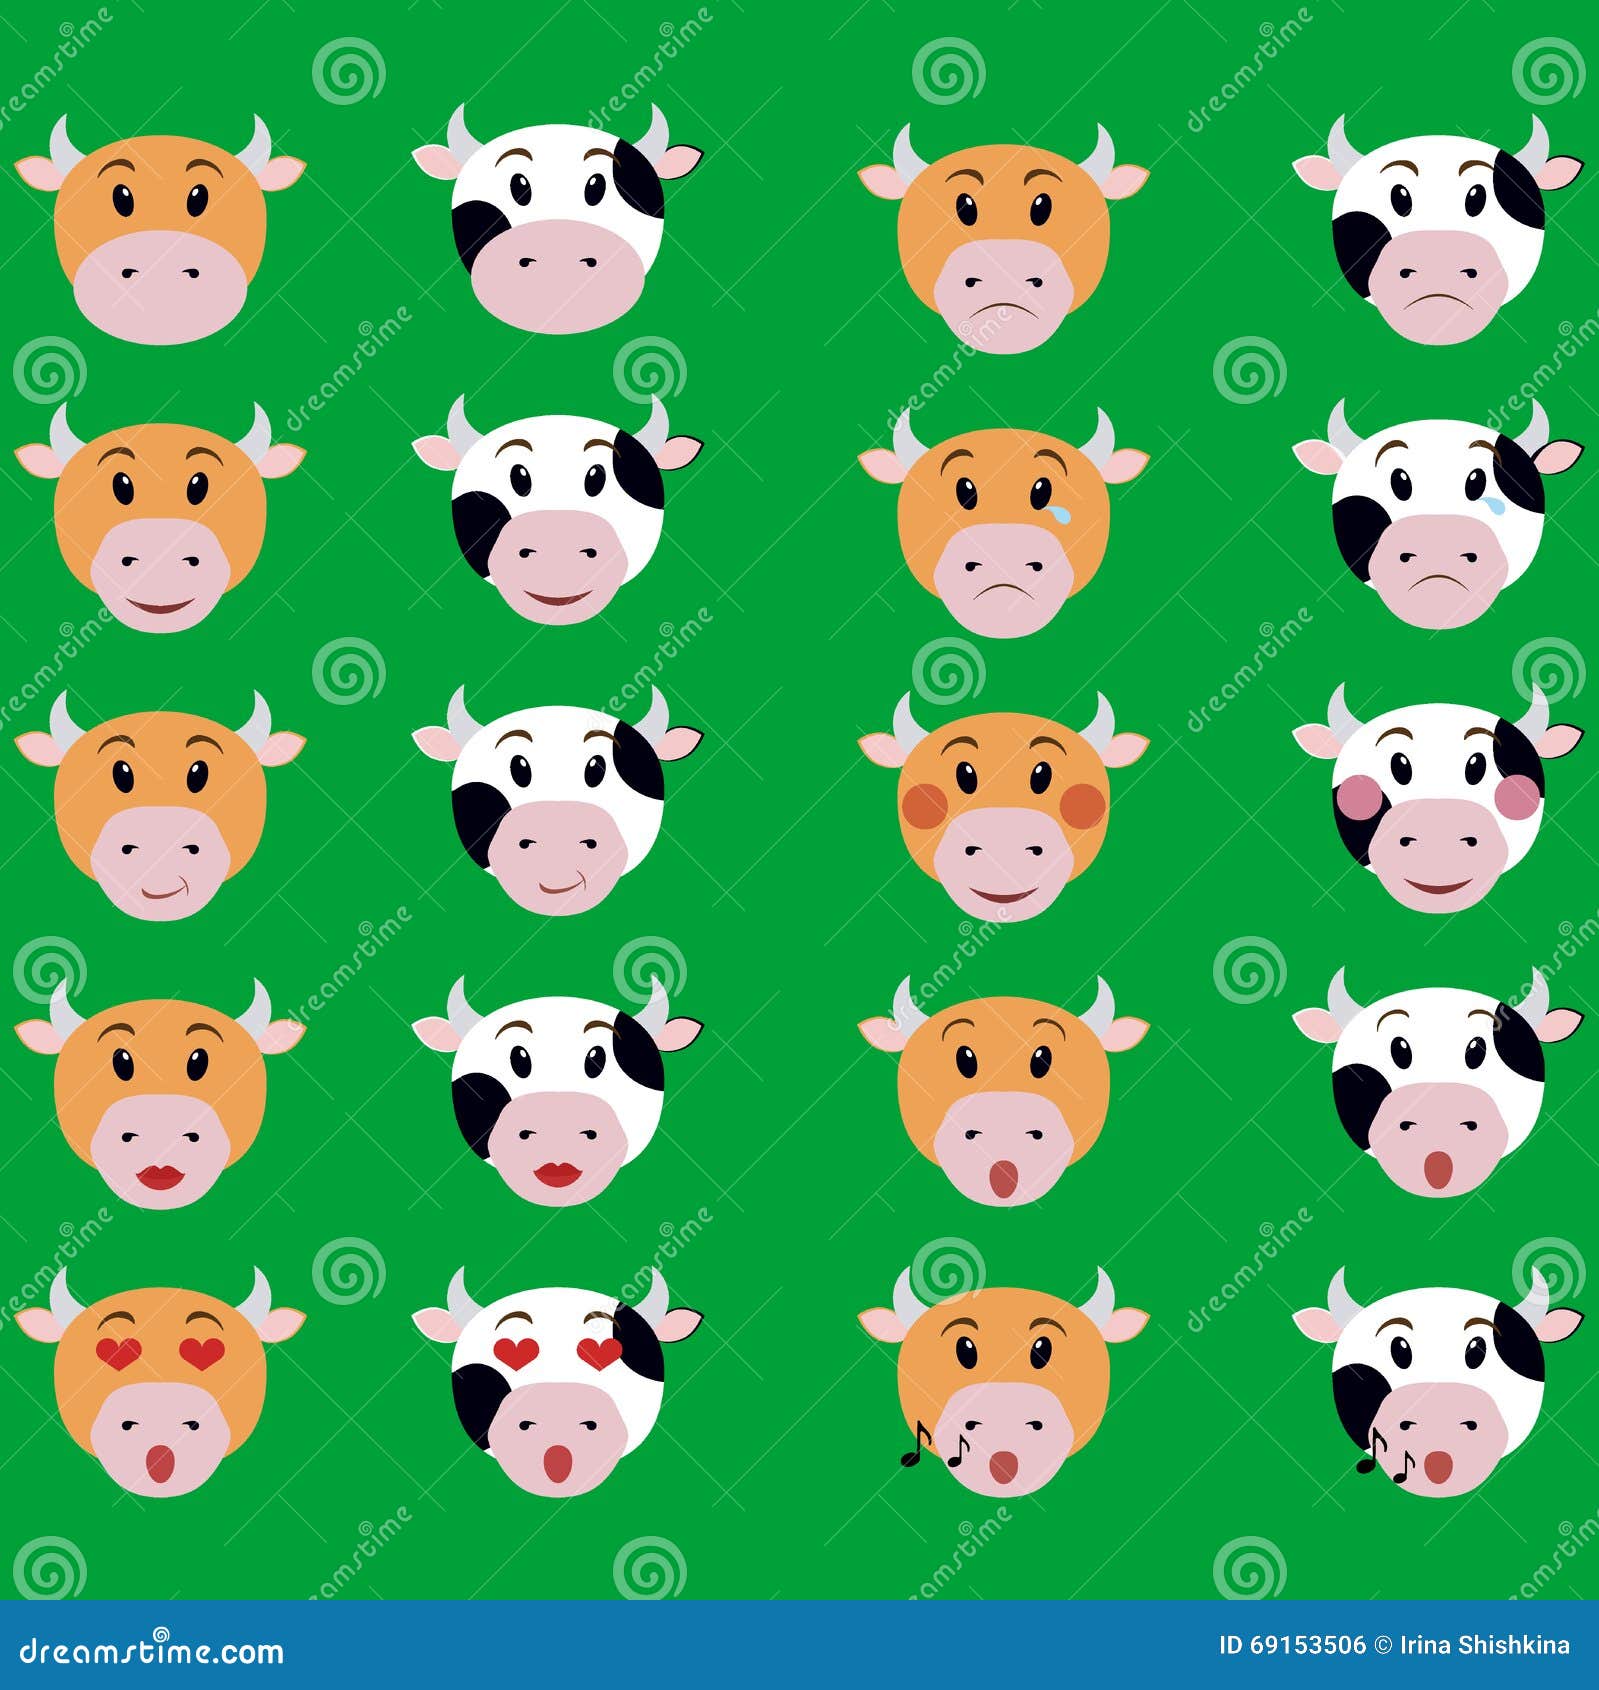 Arte de vetor de emoções de expressões de rosto de vaca